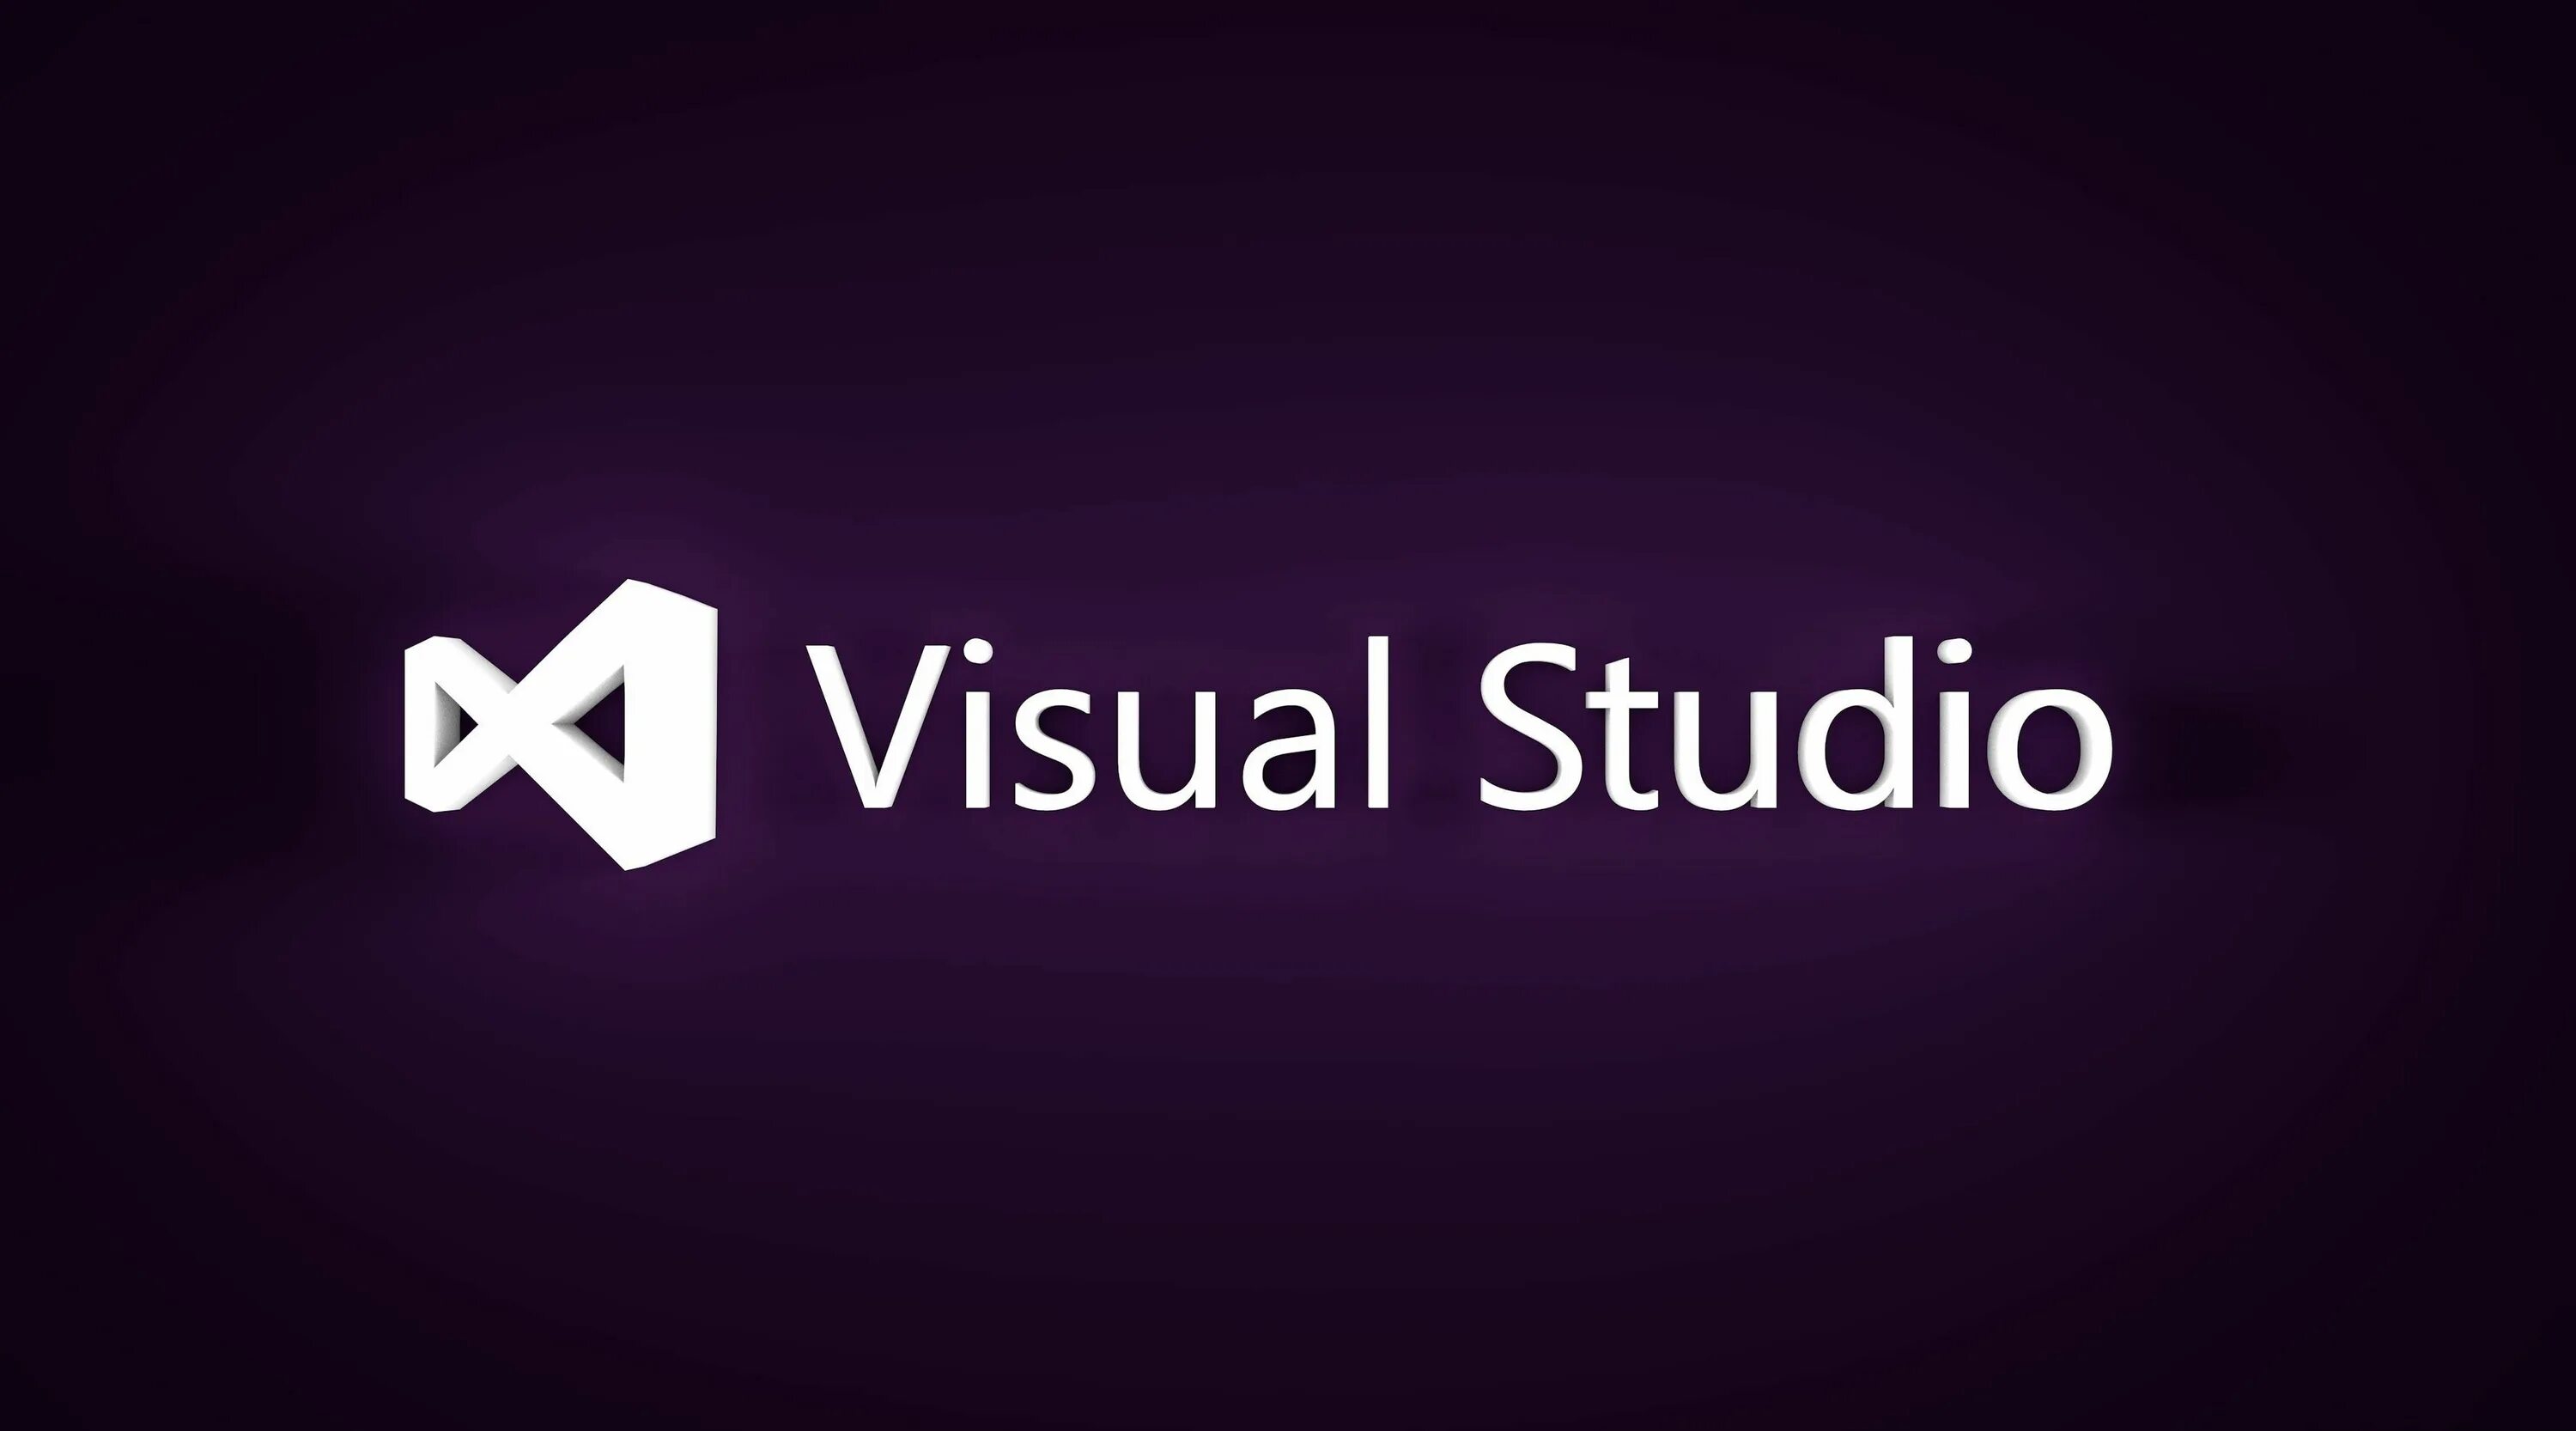 Vc studio c. Visual Studio. Microsoft Visual Studio. Вижуал студия. Визуал студио c.